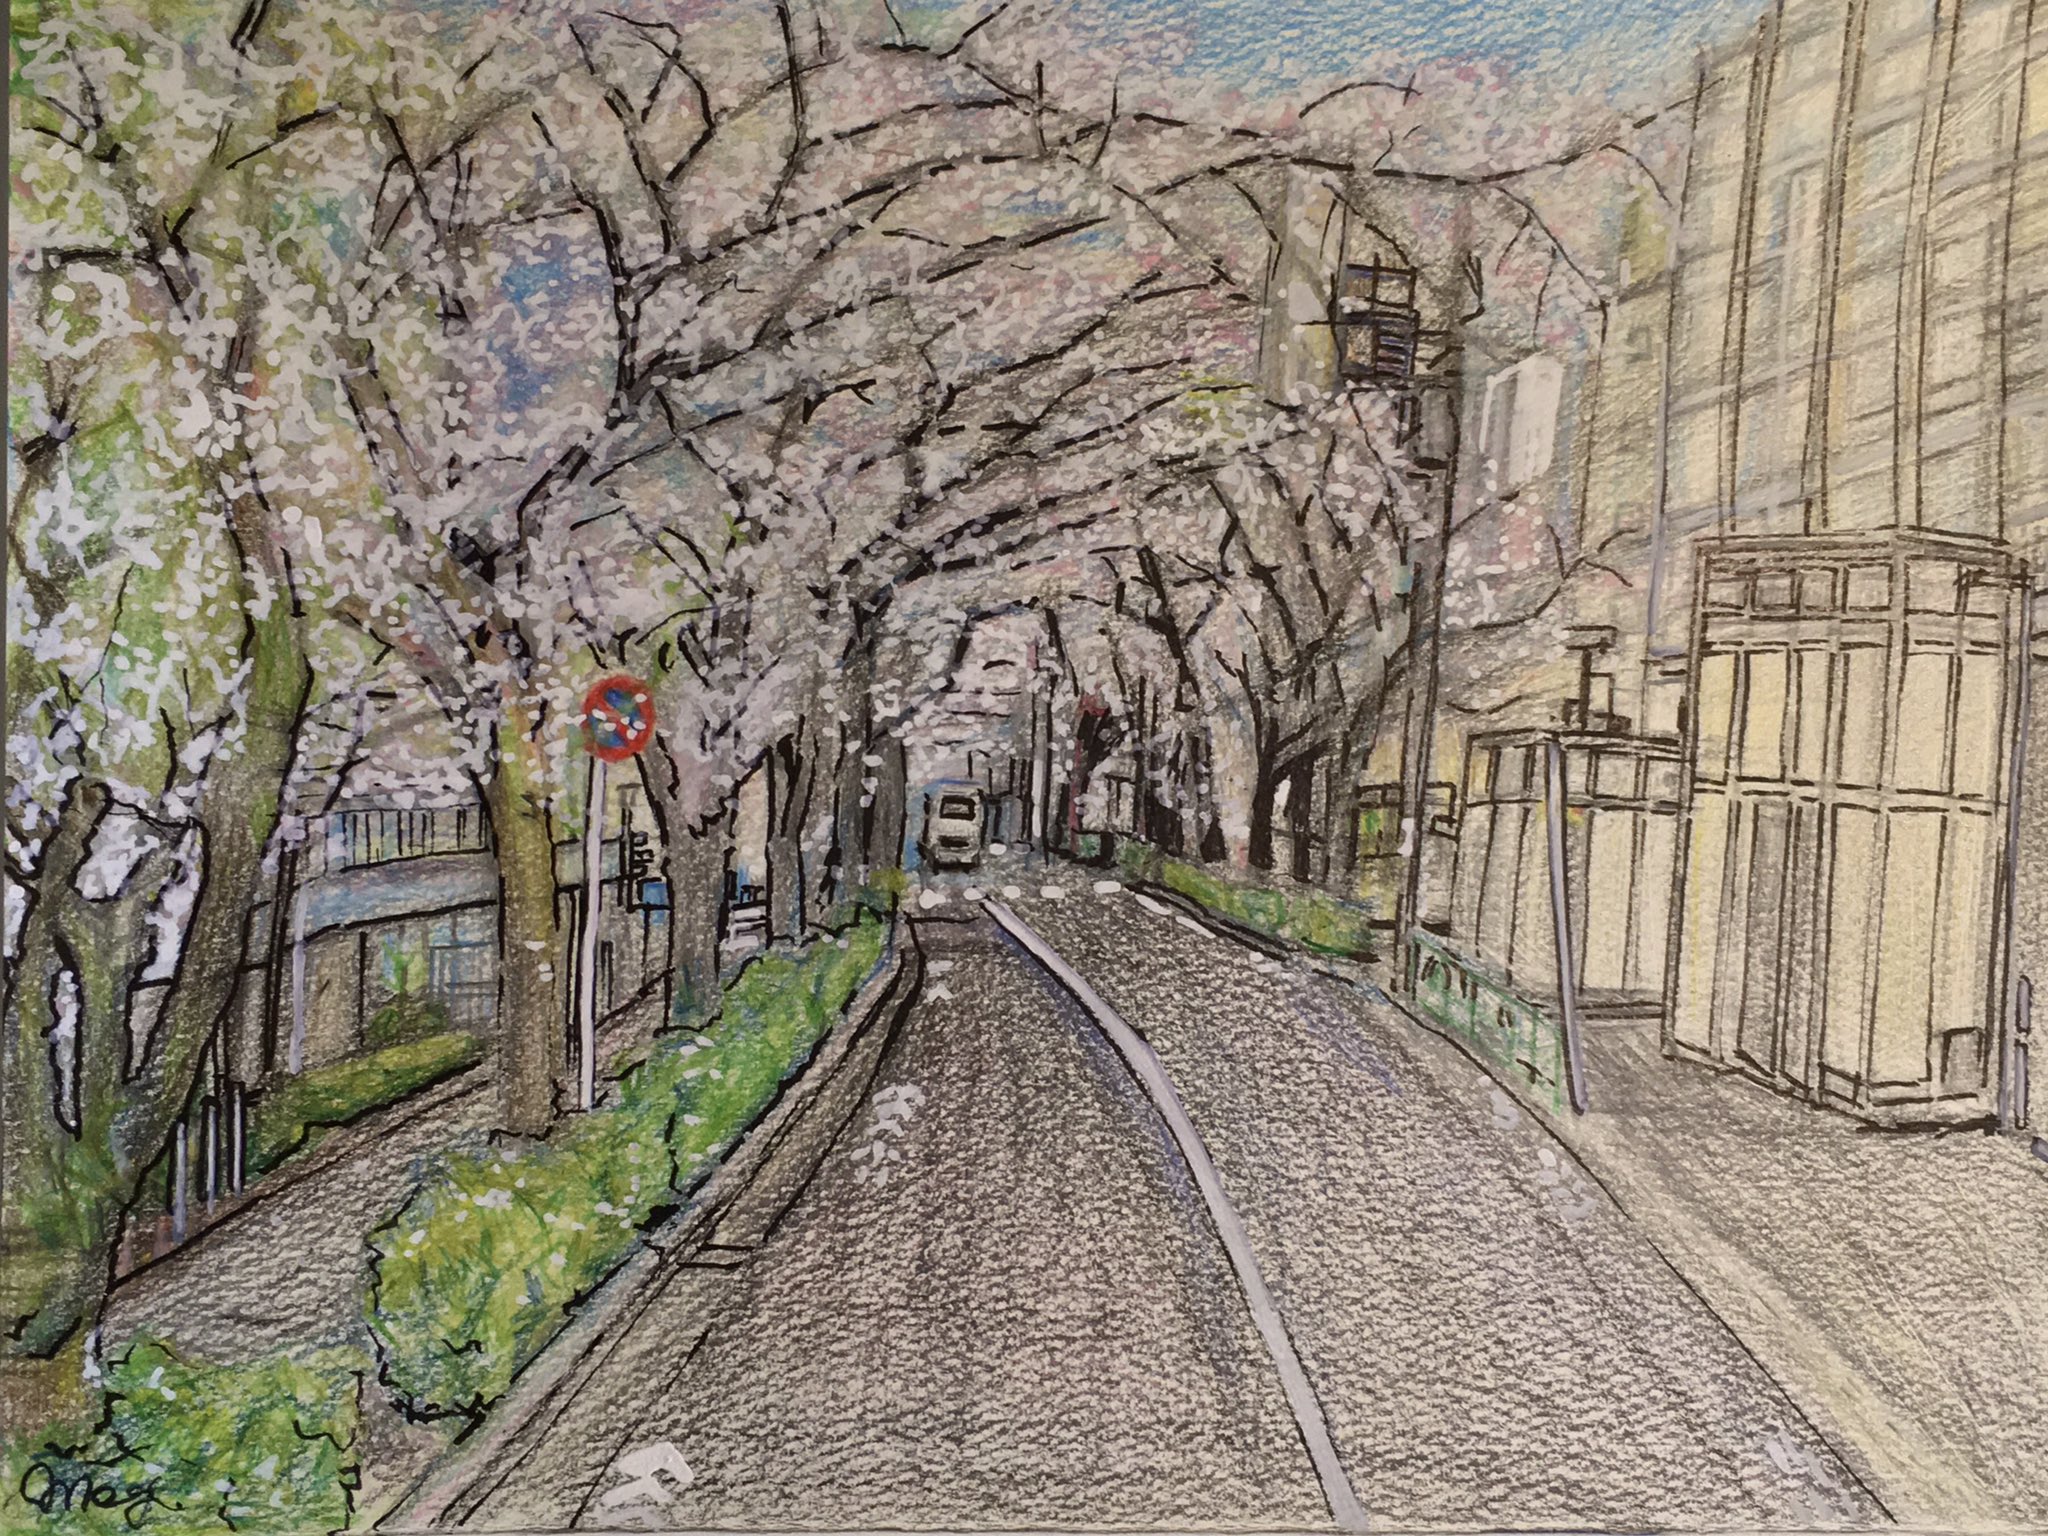 Megumi Gemgemworks 桜並木 の絵を描きました 7時間半かかった 色鉛筆 と 黒ペン と 白の ポスカ です イラスト いらすと お絵描き Illustration T Co Ikr76mmkcl Twitter